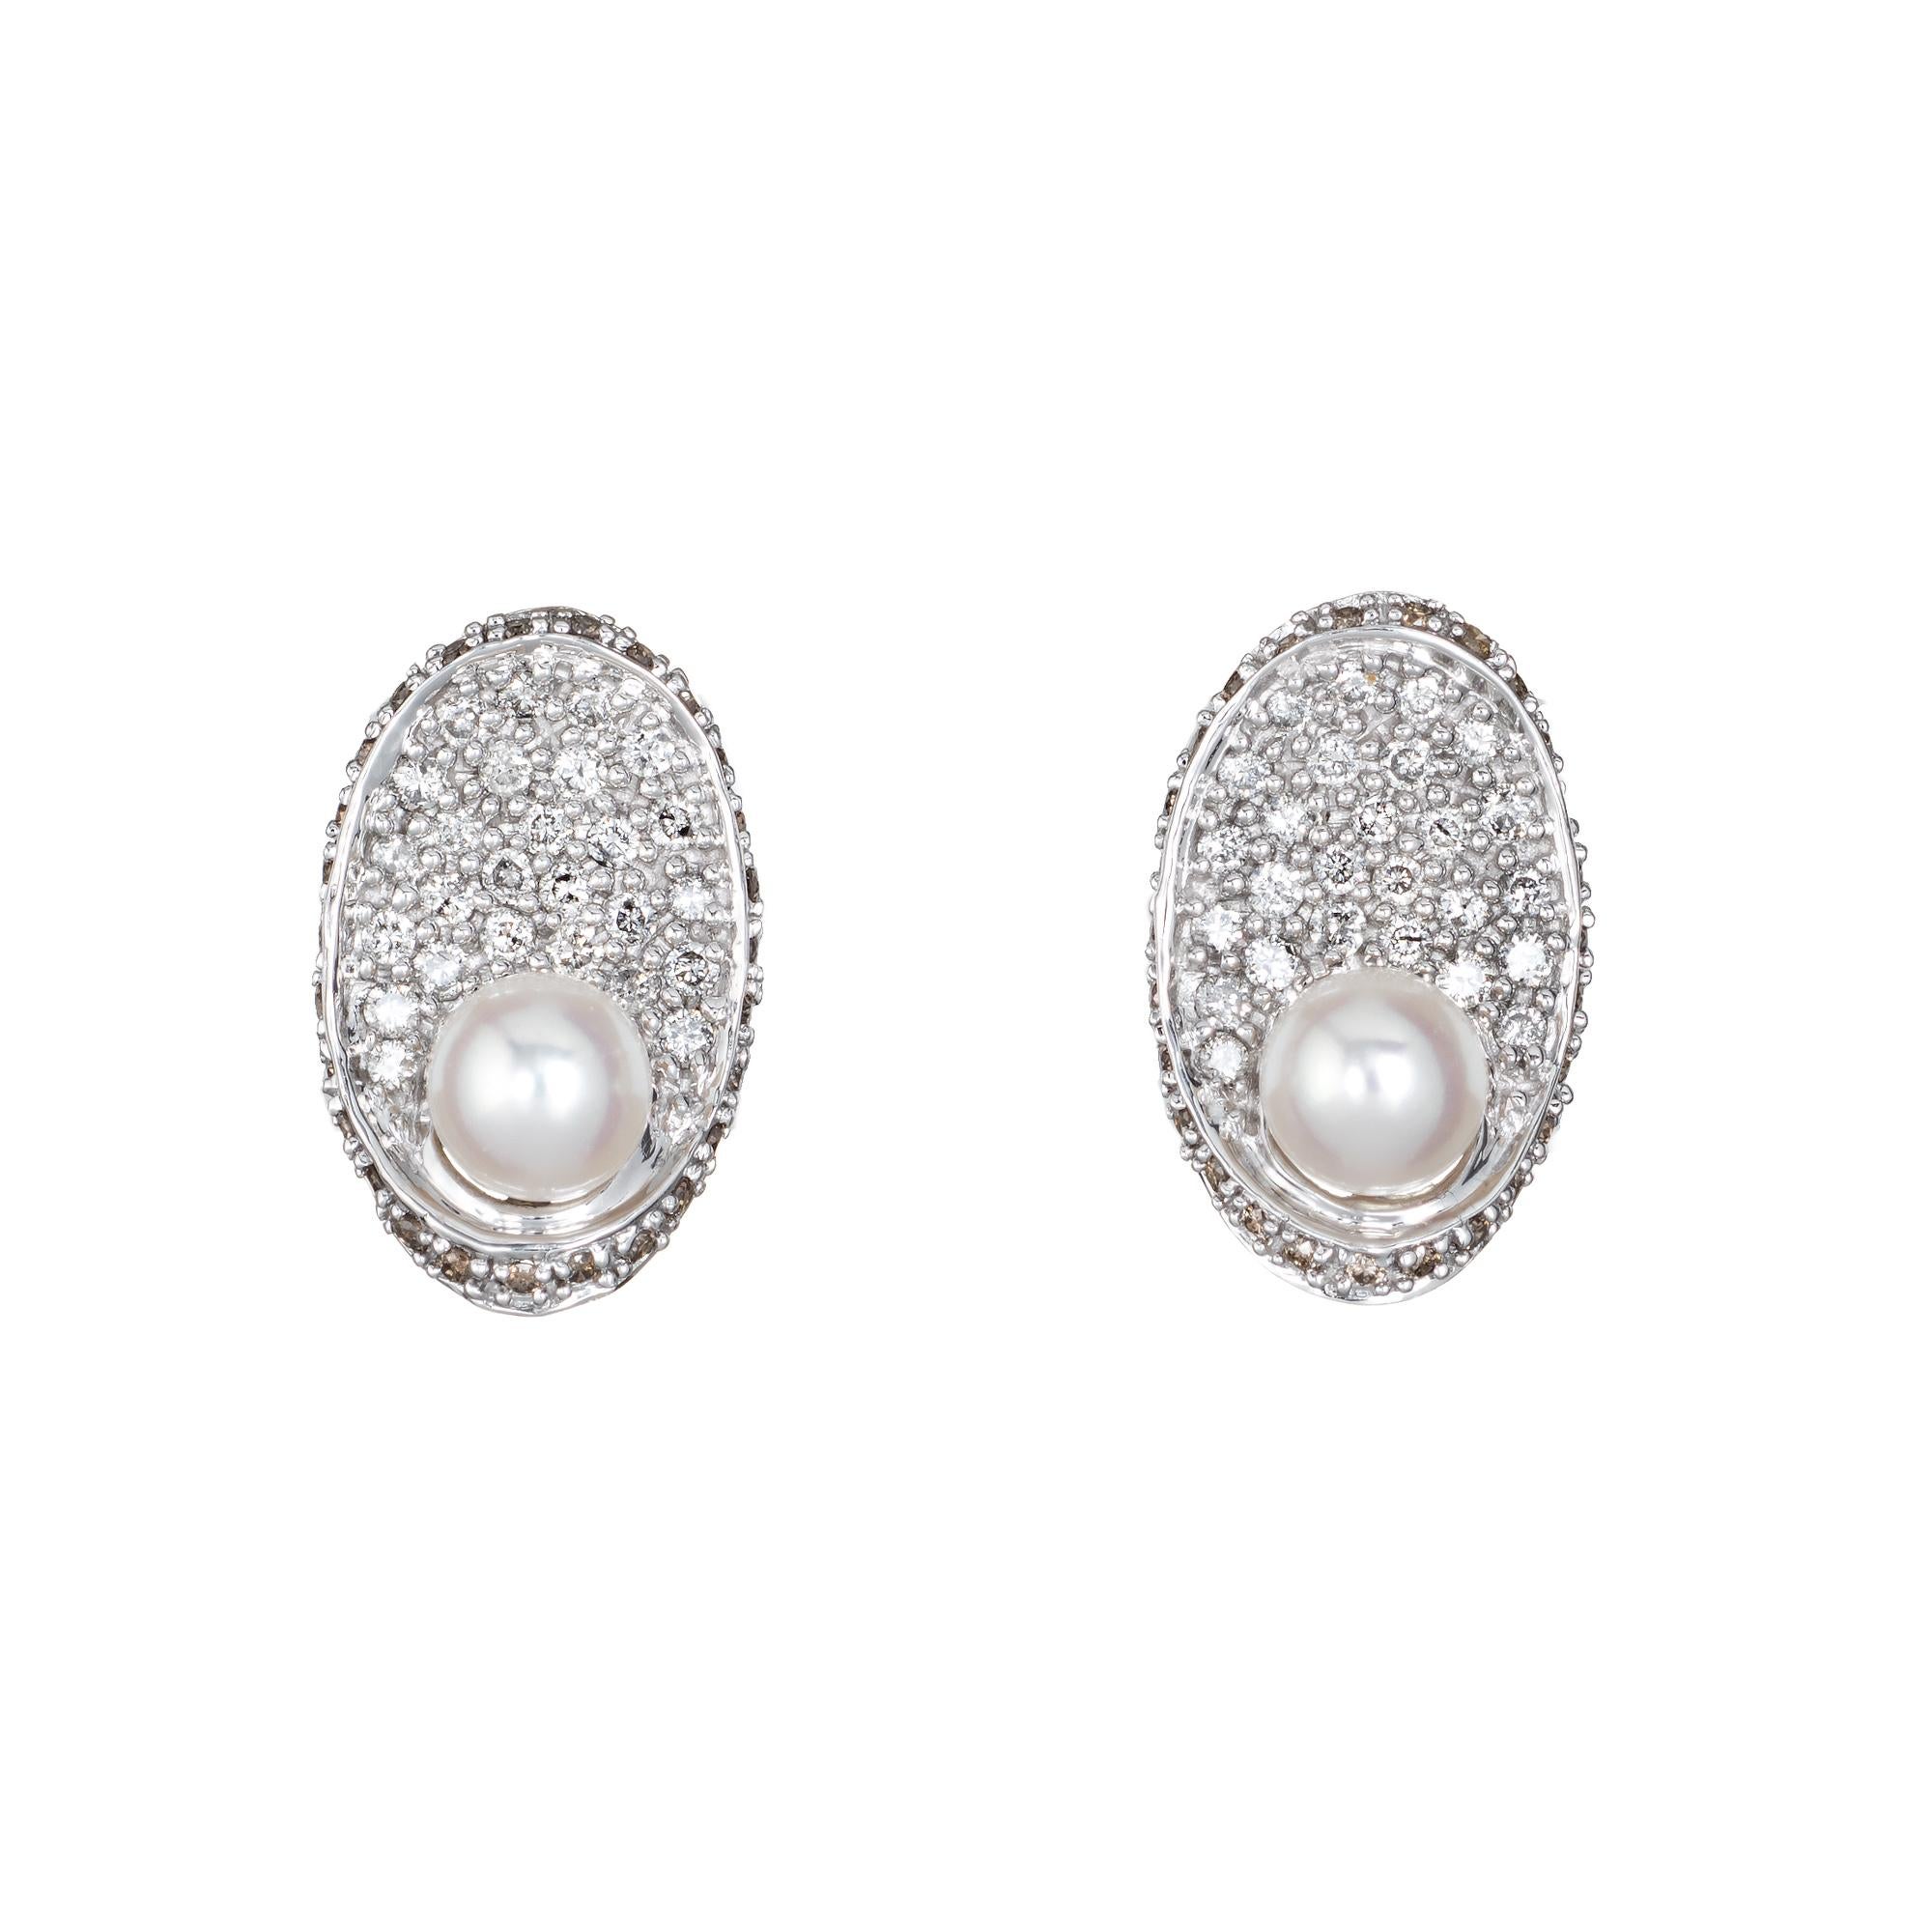 Elegantes Paar Ohrringe aus 14-karätigem Weißgold mit Diamanten und Zuchtperlen. 

Die runden Diamanten im Brillantschliff haben insgesamt schätzungsweise 0,84 Karat (geschätzte Farbe H-M und Reinheit VS2-SI1). Zwei 5,5 mm große Zuchtperlen betonen